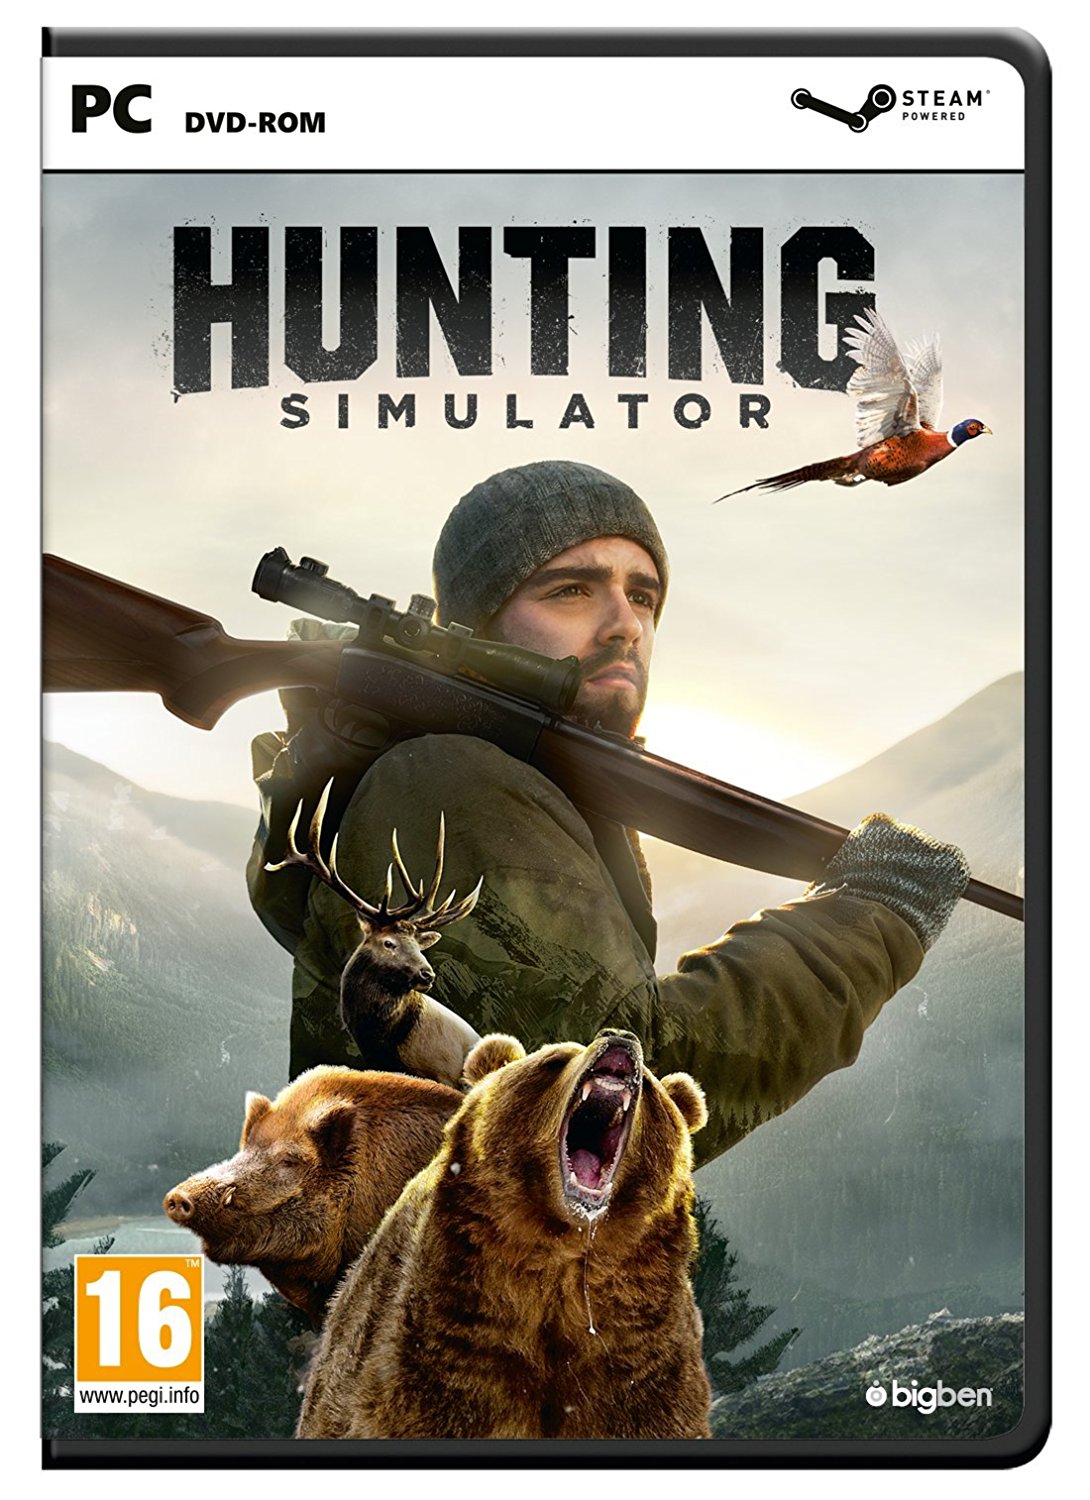 Bote de Hunting Simulator